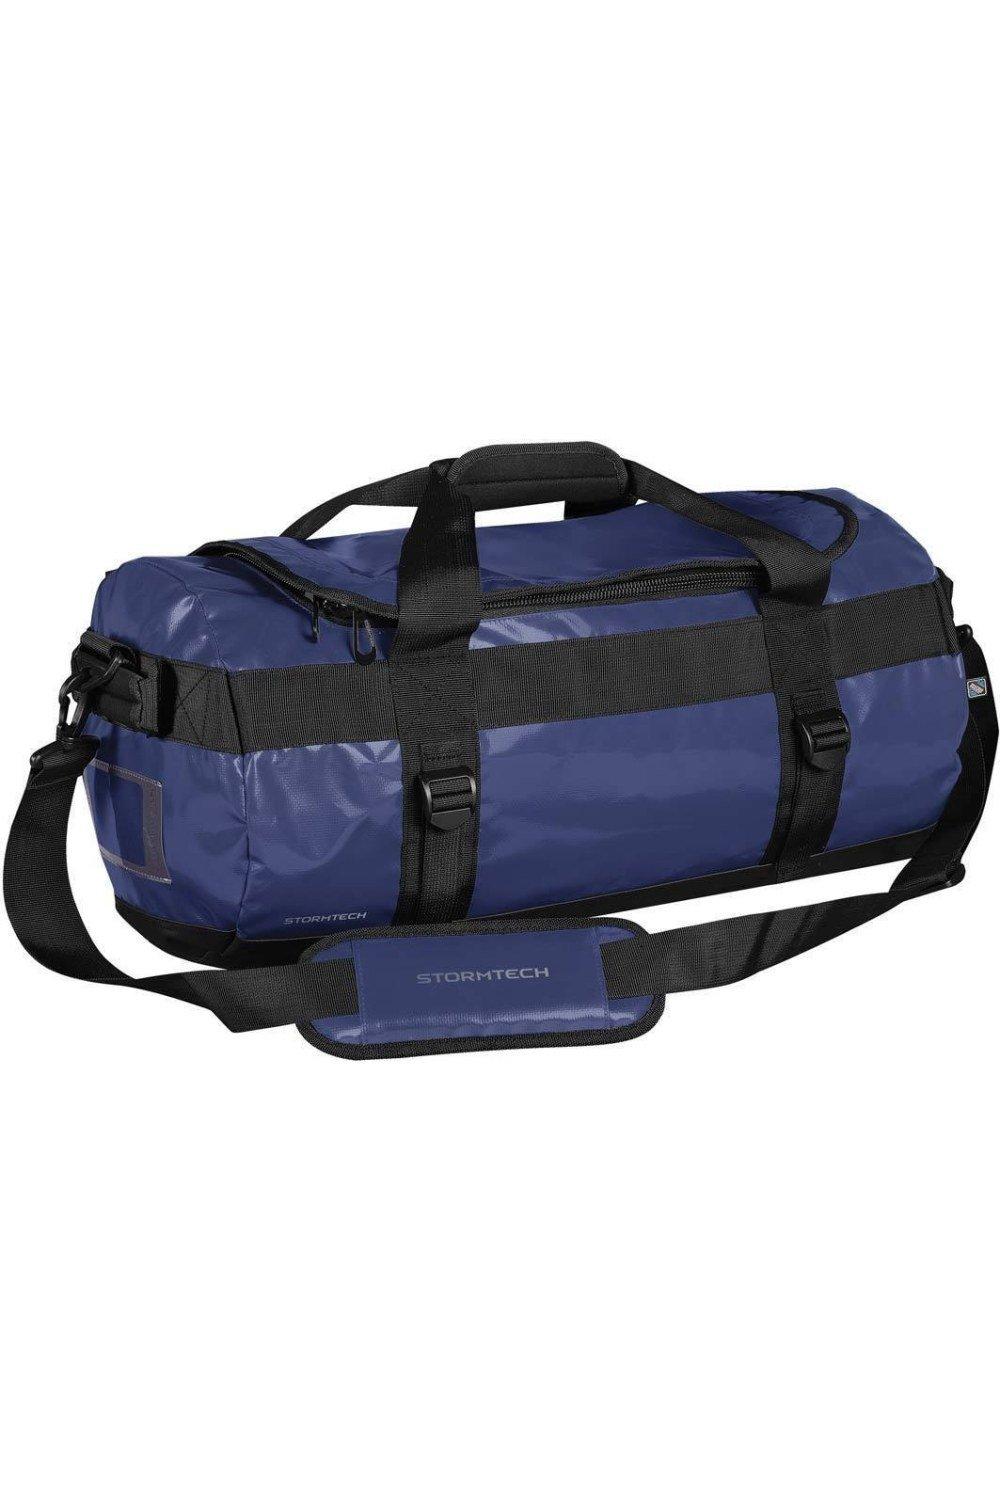 цена Водонепроницаемая спортивная сумка Atlantis объемом 35 л Stormtech, синий